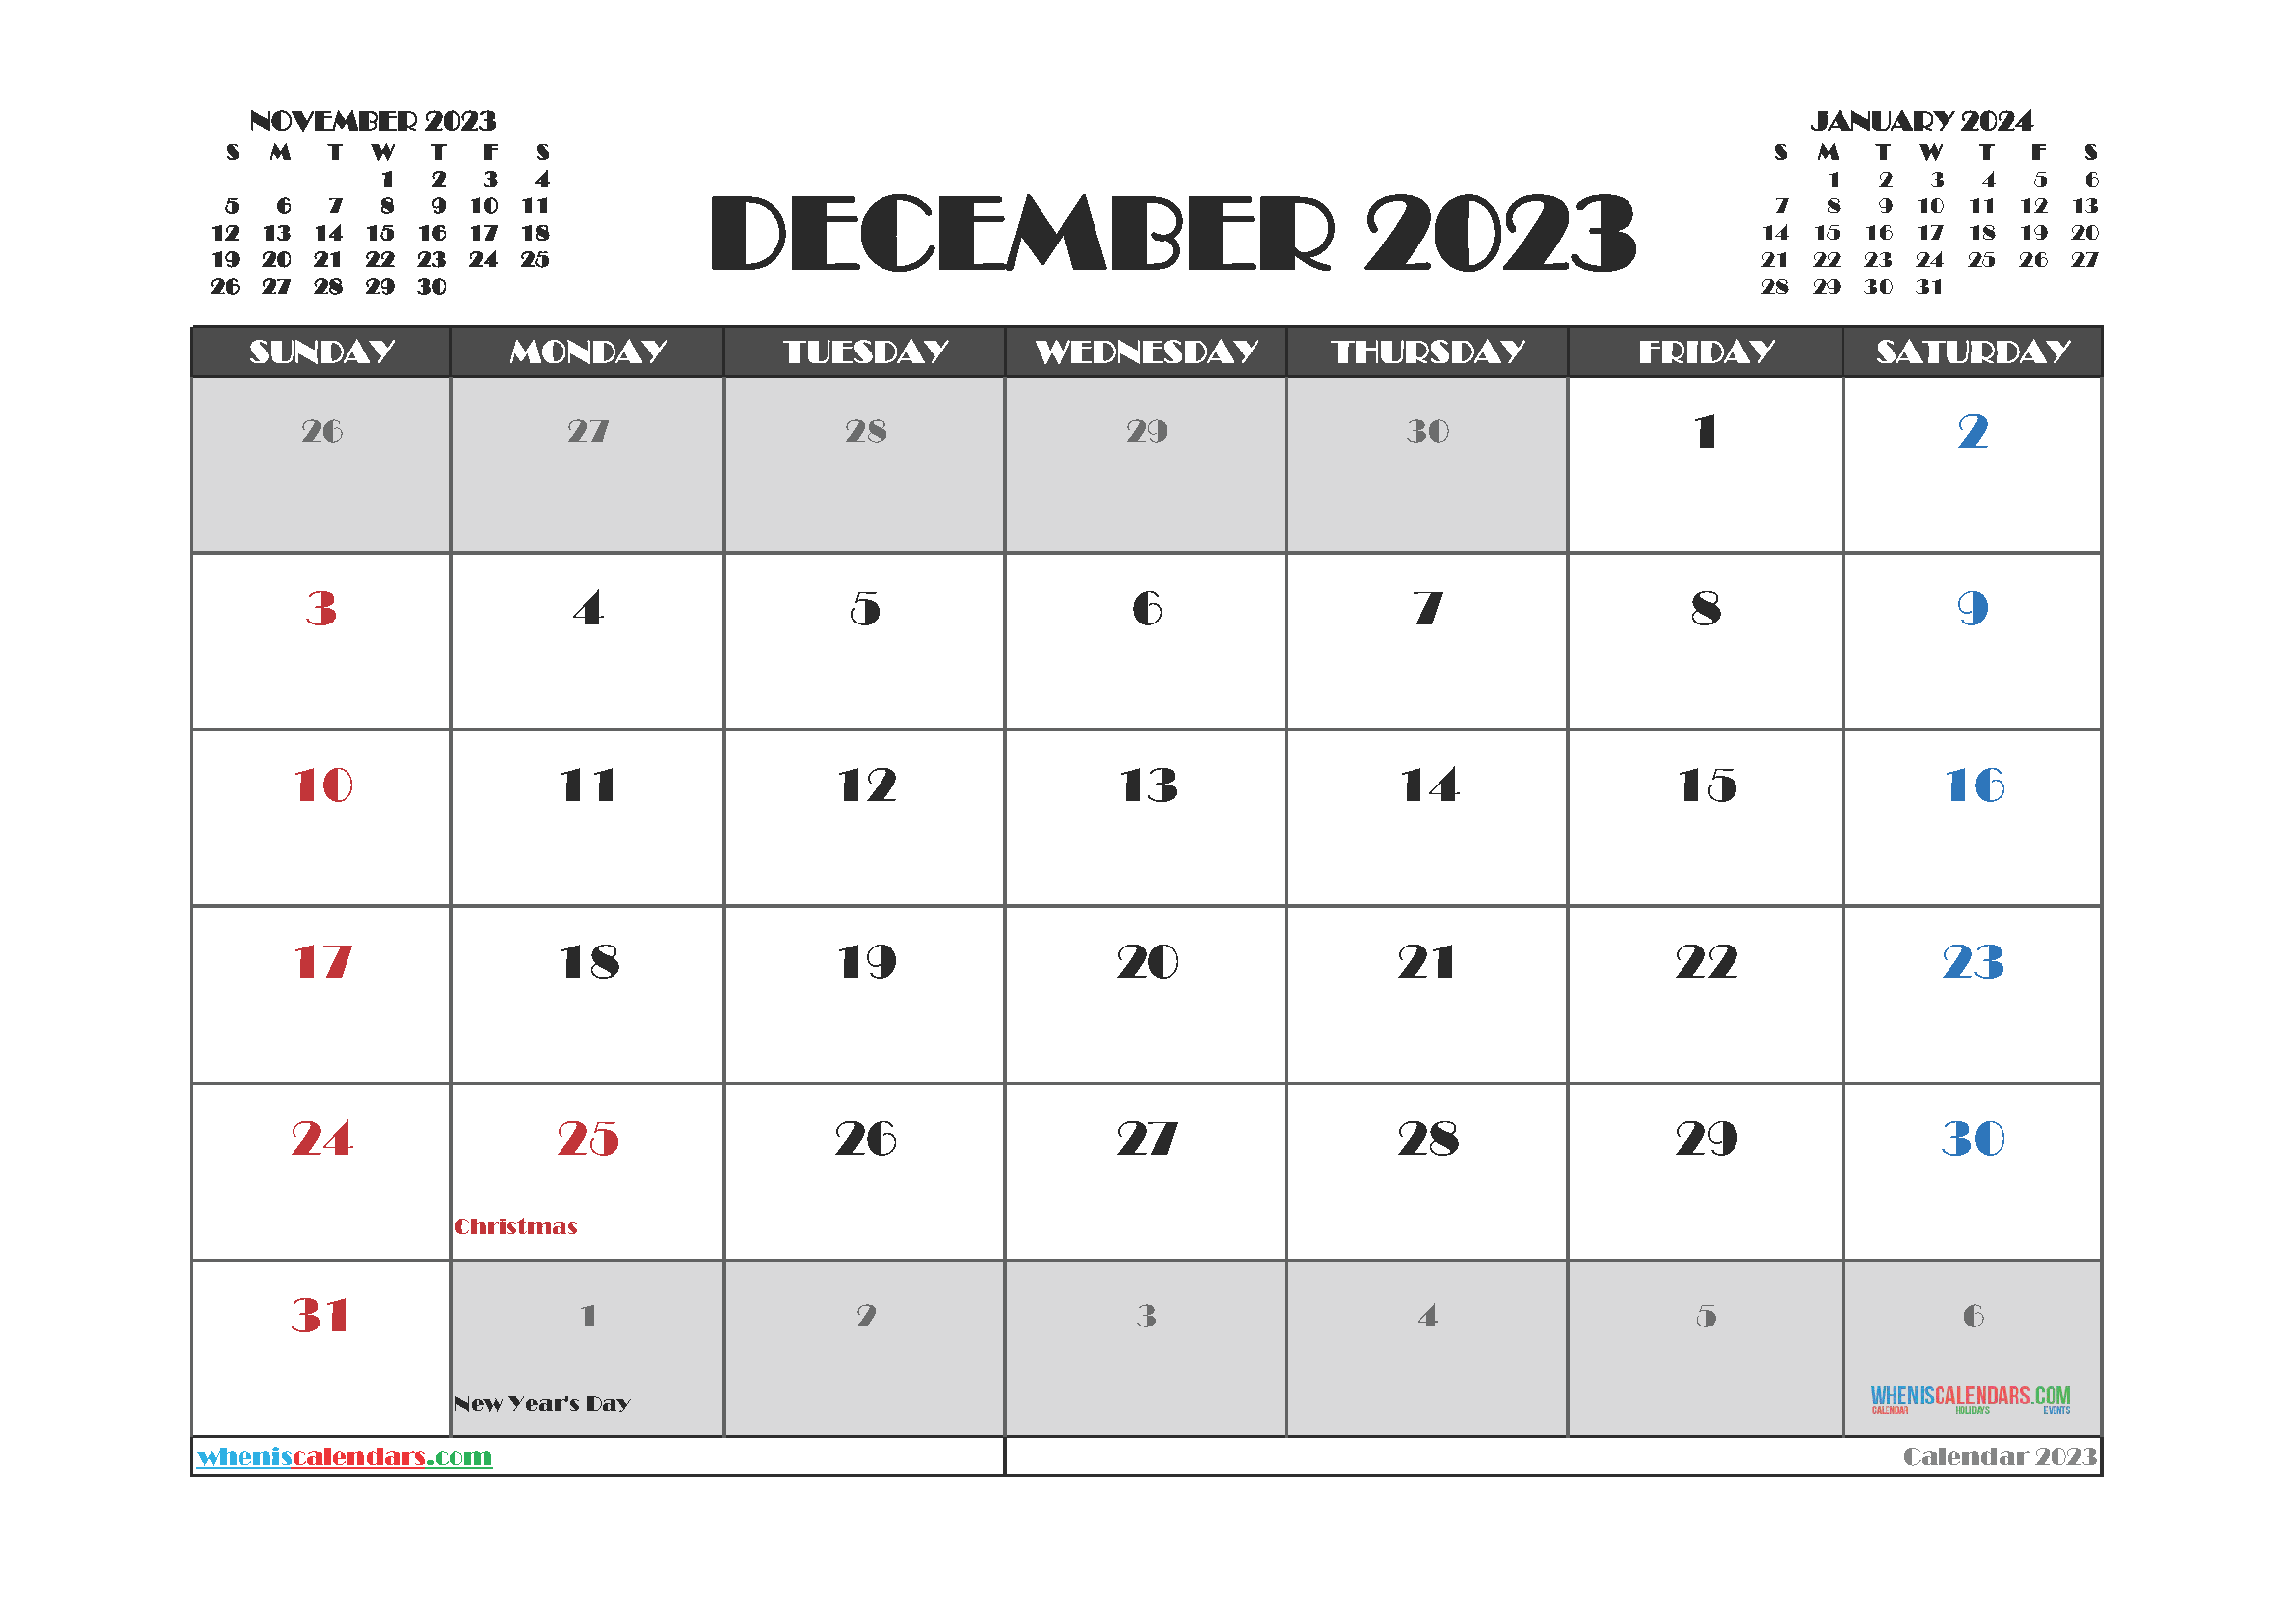 2023 printable calendar by month